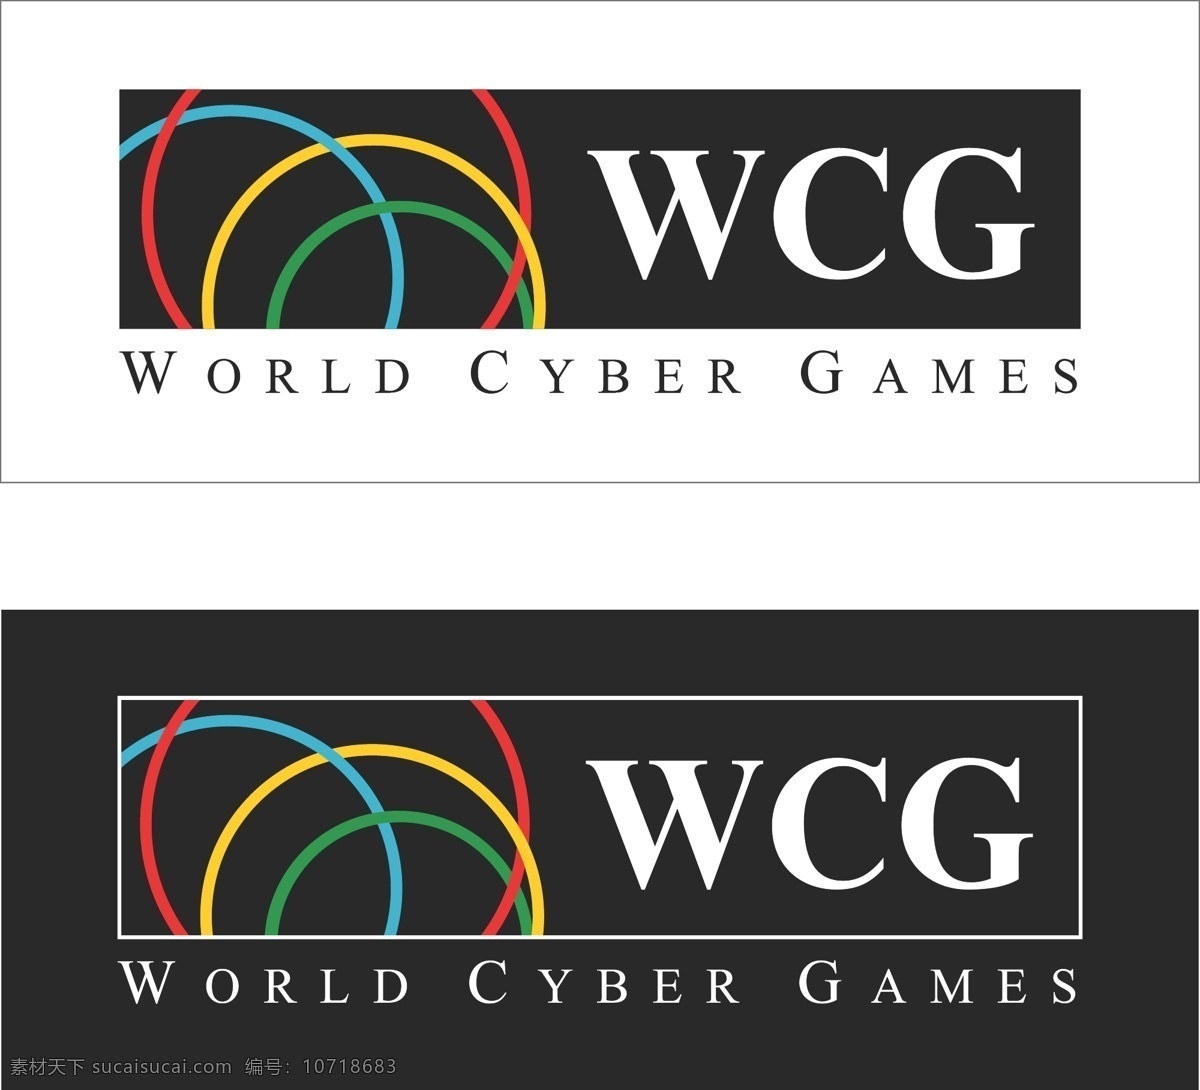 cs 标识标志图标 标志logo 公共标识标志 魔兽 矢量图库 世界杯 游戏 wcglogo wcg 电子竞技 反恐精英 war psd源文件 logo设计